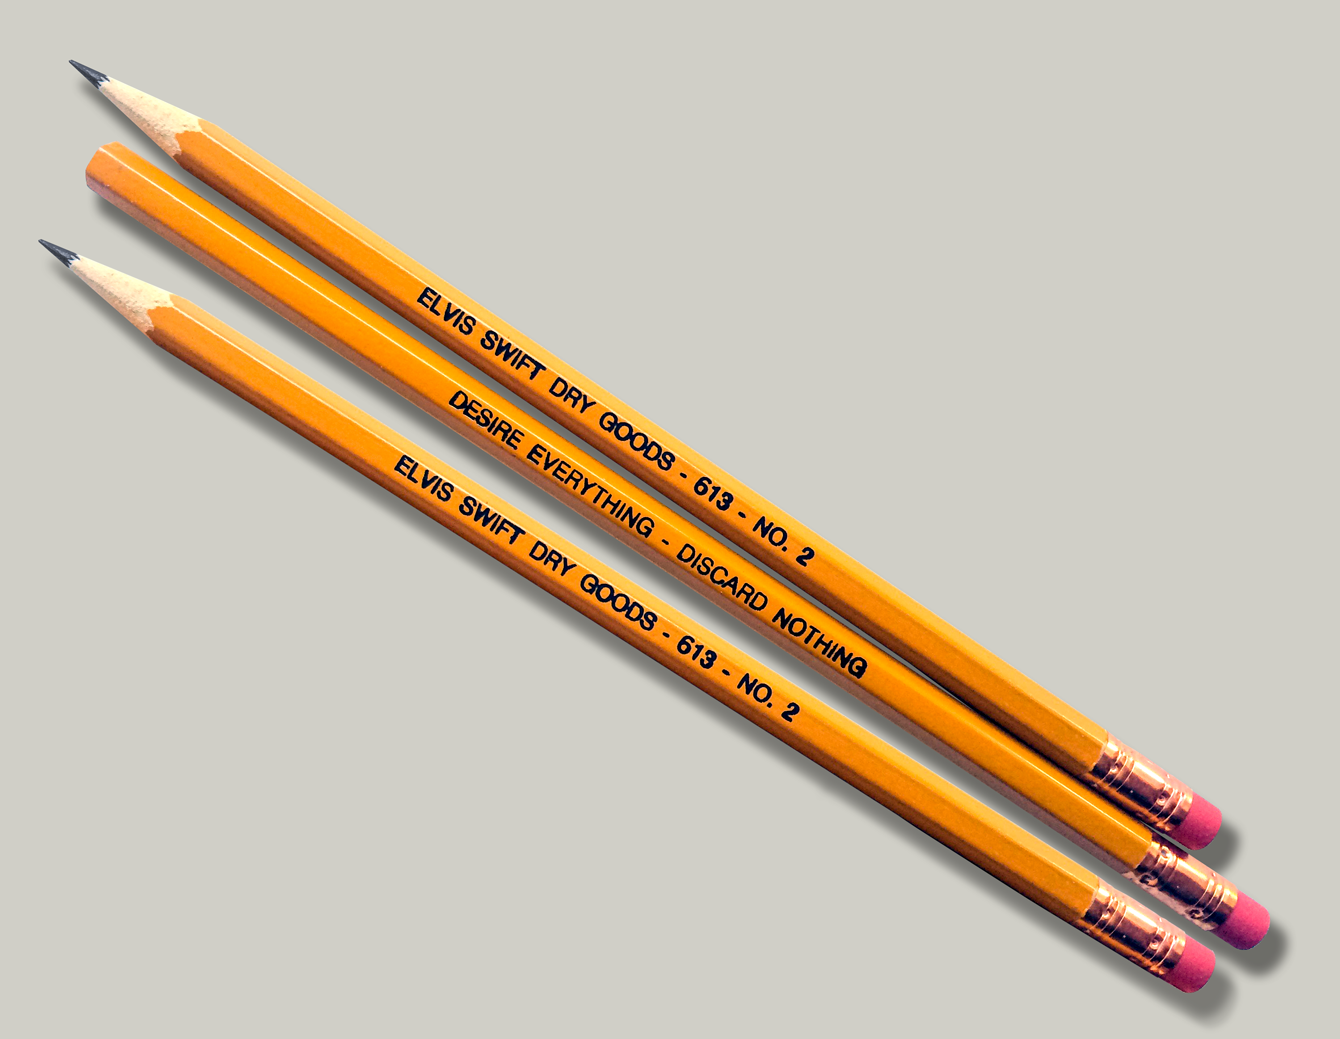 1 pencil vs 2 pencil